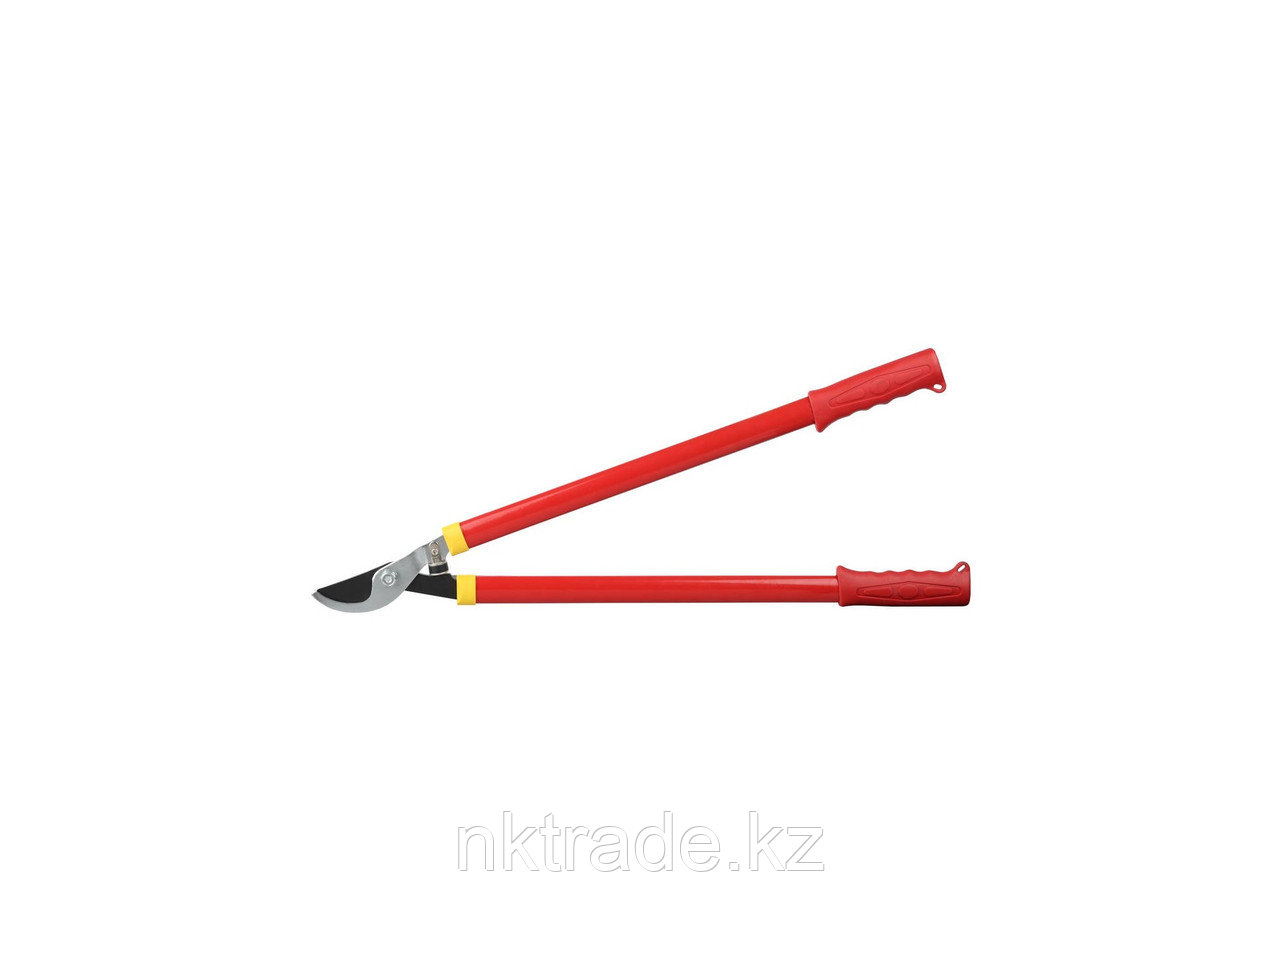 Сучкорез GRINDA с тефлоновым покрытием, стальные ручки, 715мм8-424107_z01